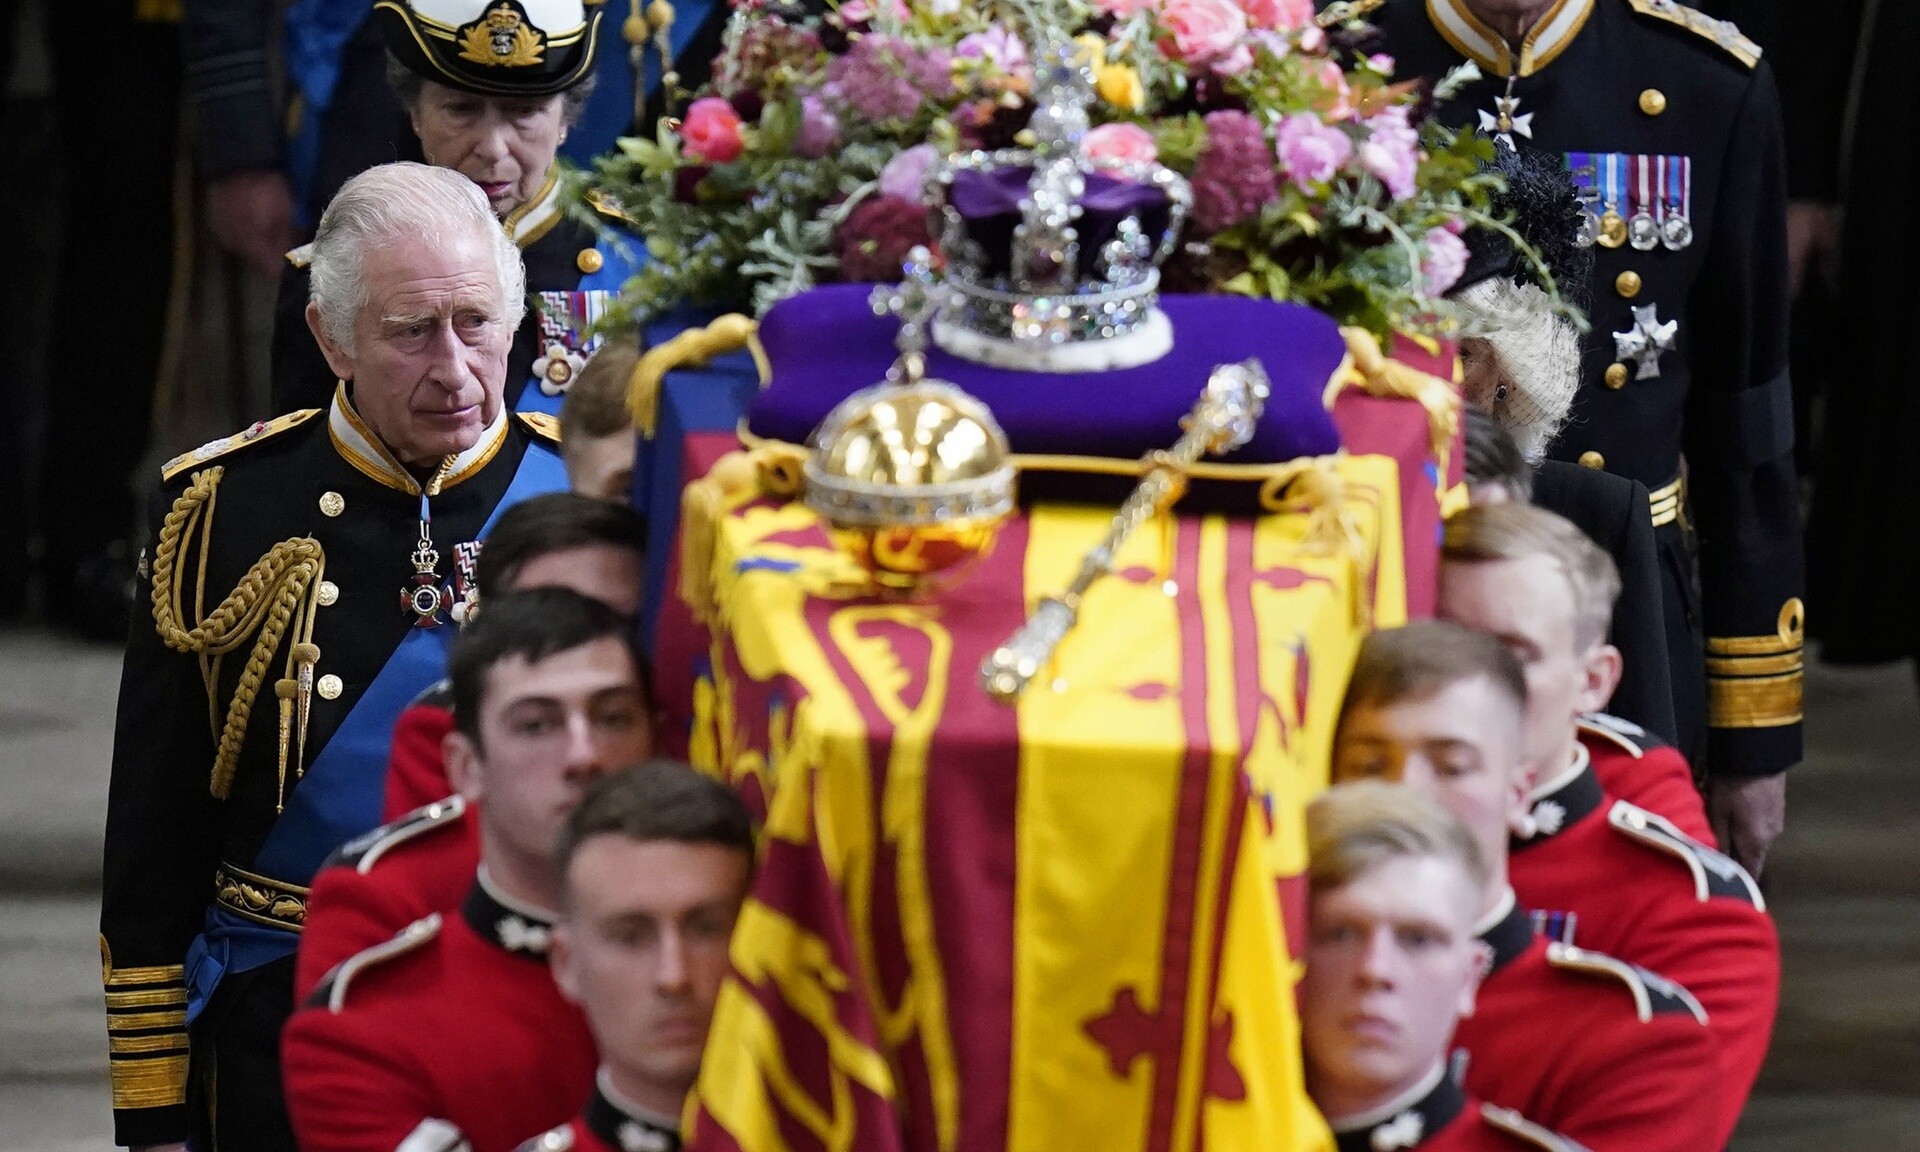 Βασιλιάς Κάρολος: «Έχει μόλις δύο χρόνια ζωής» αναφέρουν πηγές - Έτοιμο το σχέδιο της κηδείας του